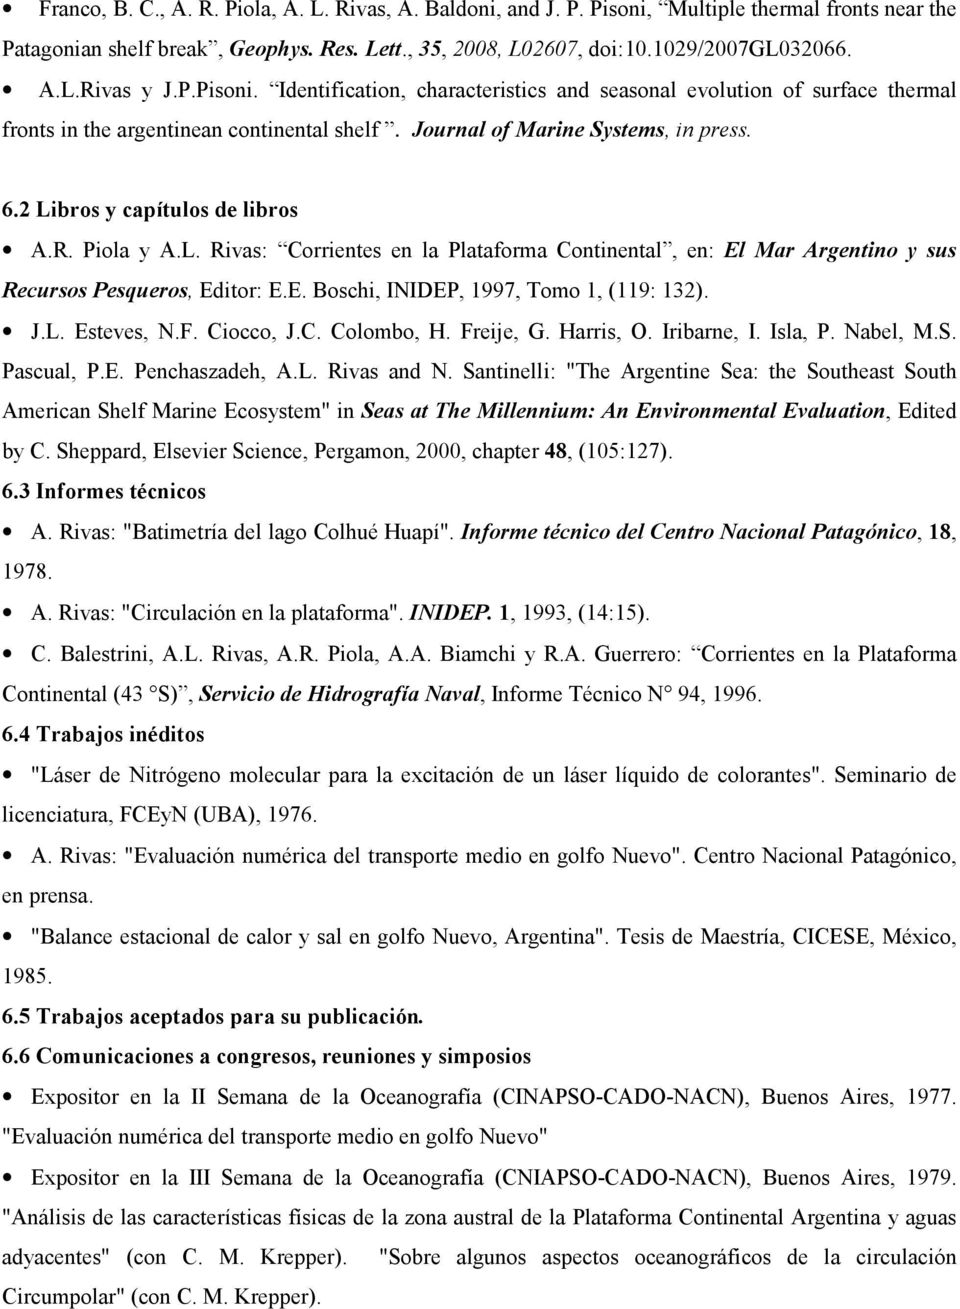 2 Libros y capítulos de libros A.R. Piola y A.L. Rivas: Corrientes en la Plataforma Continental, en: El Mar Argentino y sus Recursos Pesqueros, Editor: E.E. Boschi, INIDEP, 1997, Tomo 1, (119: 132).